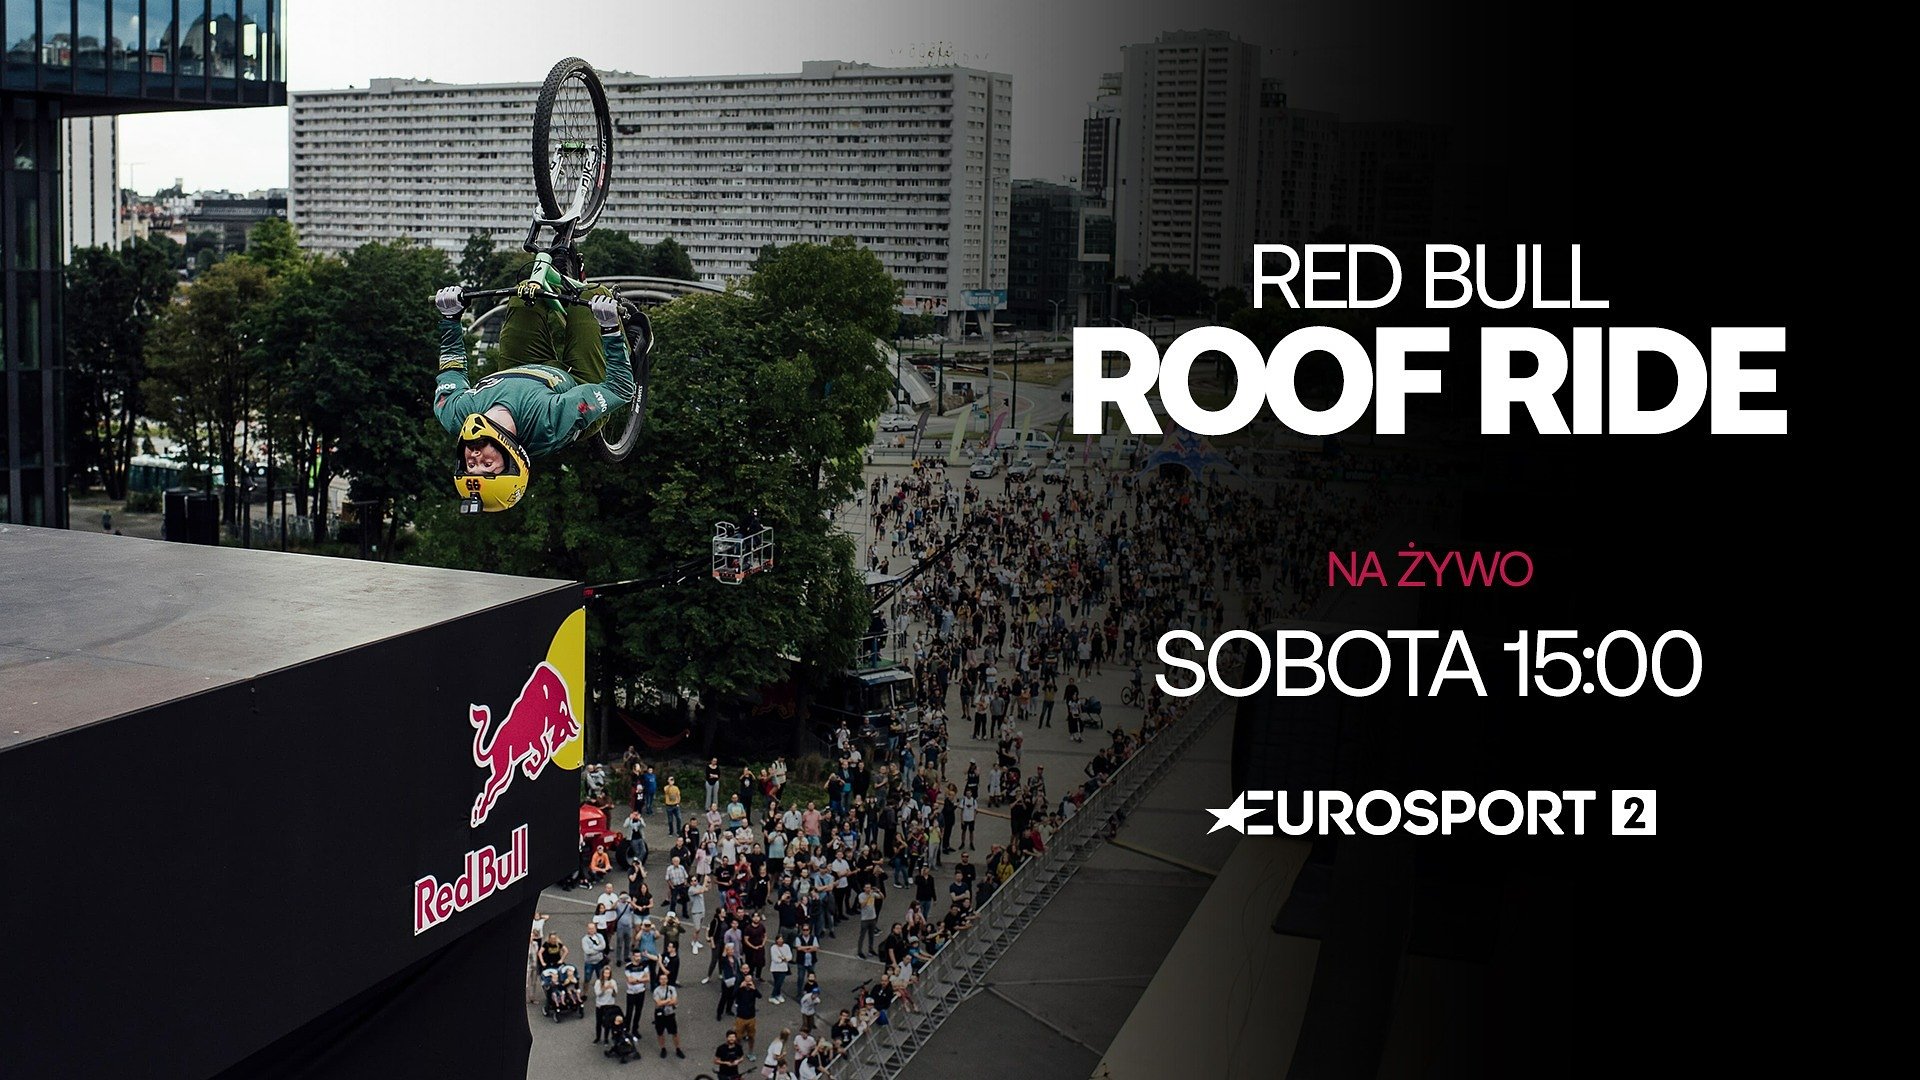 Rowerowy freestyle na dachach Katowic już w sobotę! Na żywo w Eurosport 2 i Player